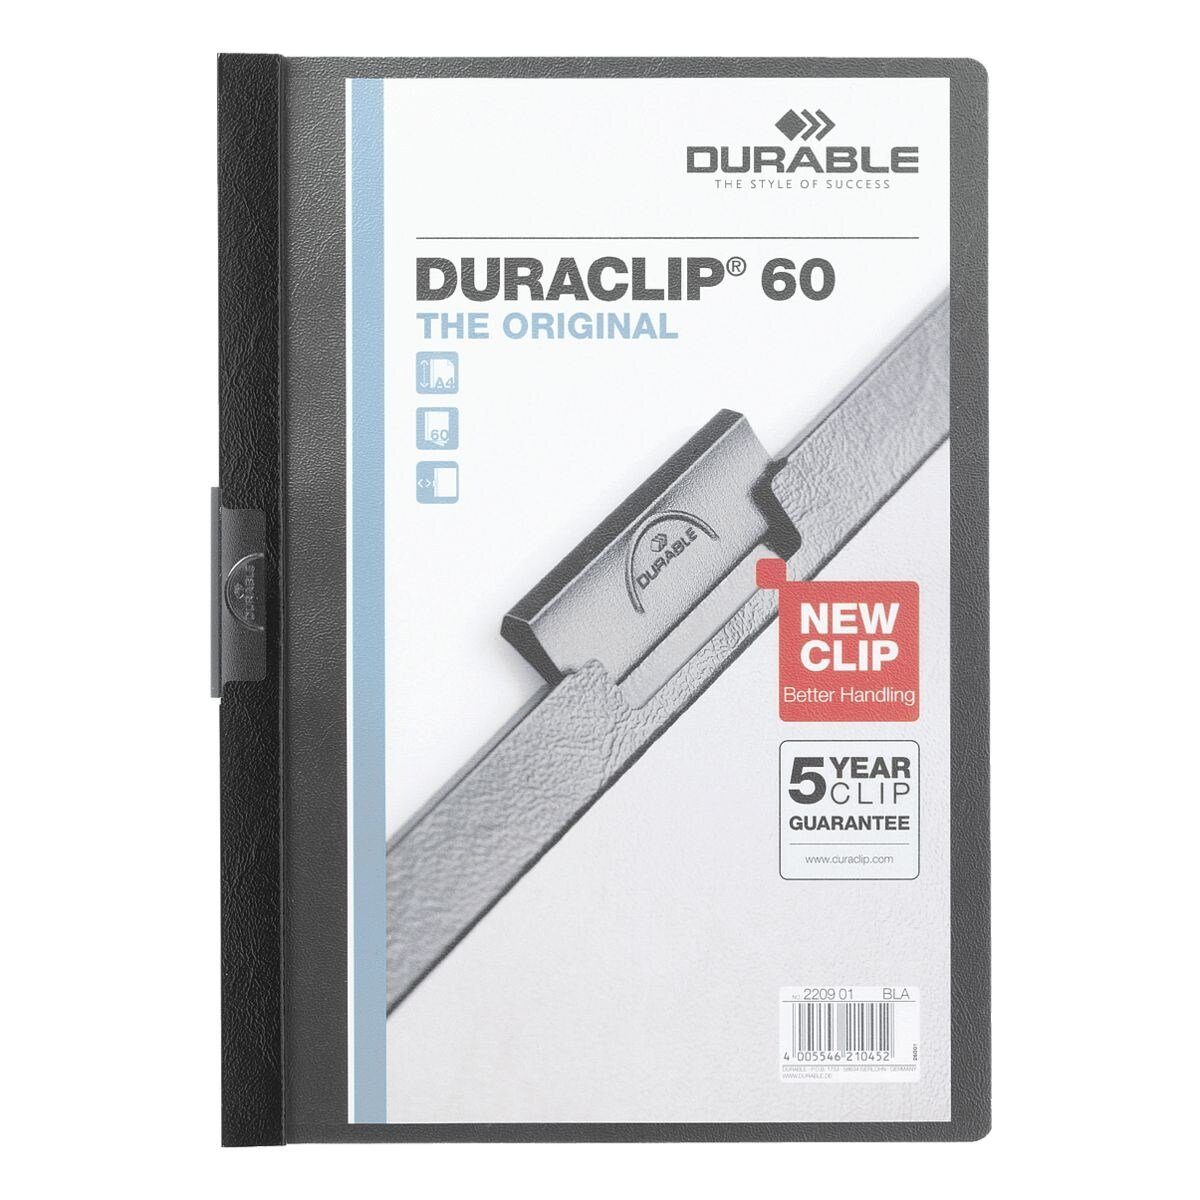 DURABLE Hefter Duraclip 60, mit Klemmfunktion, Format DIN A4, bis 60 Blatt